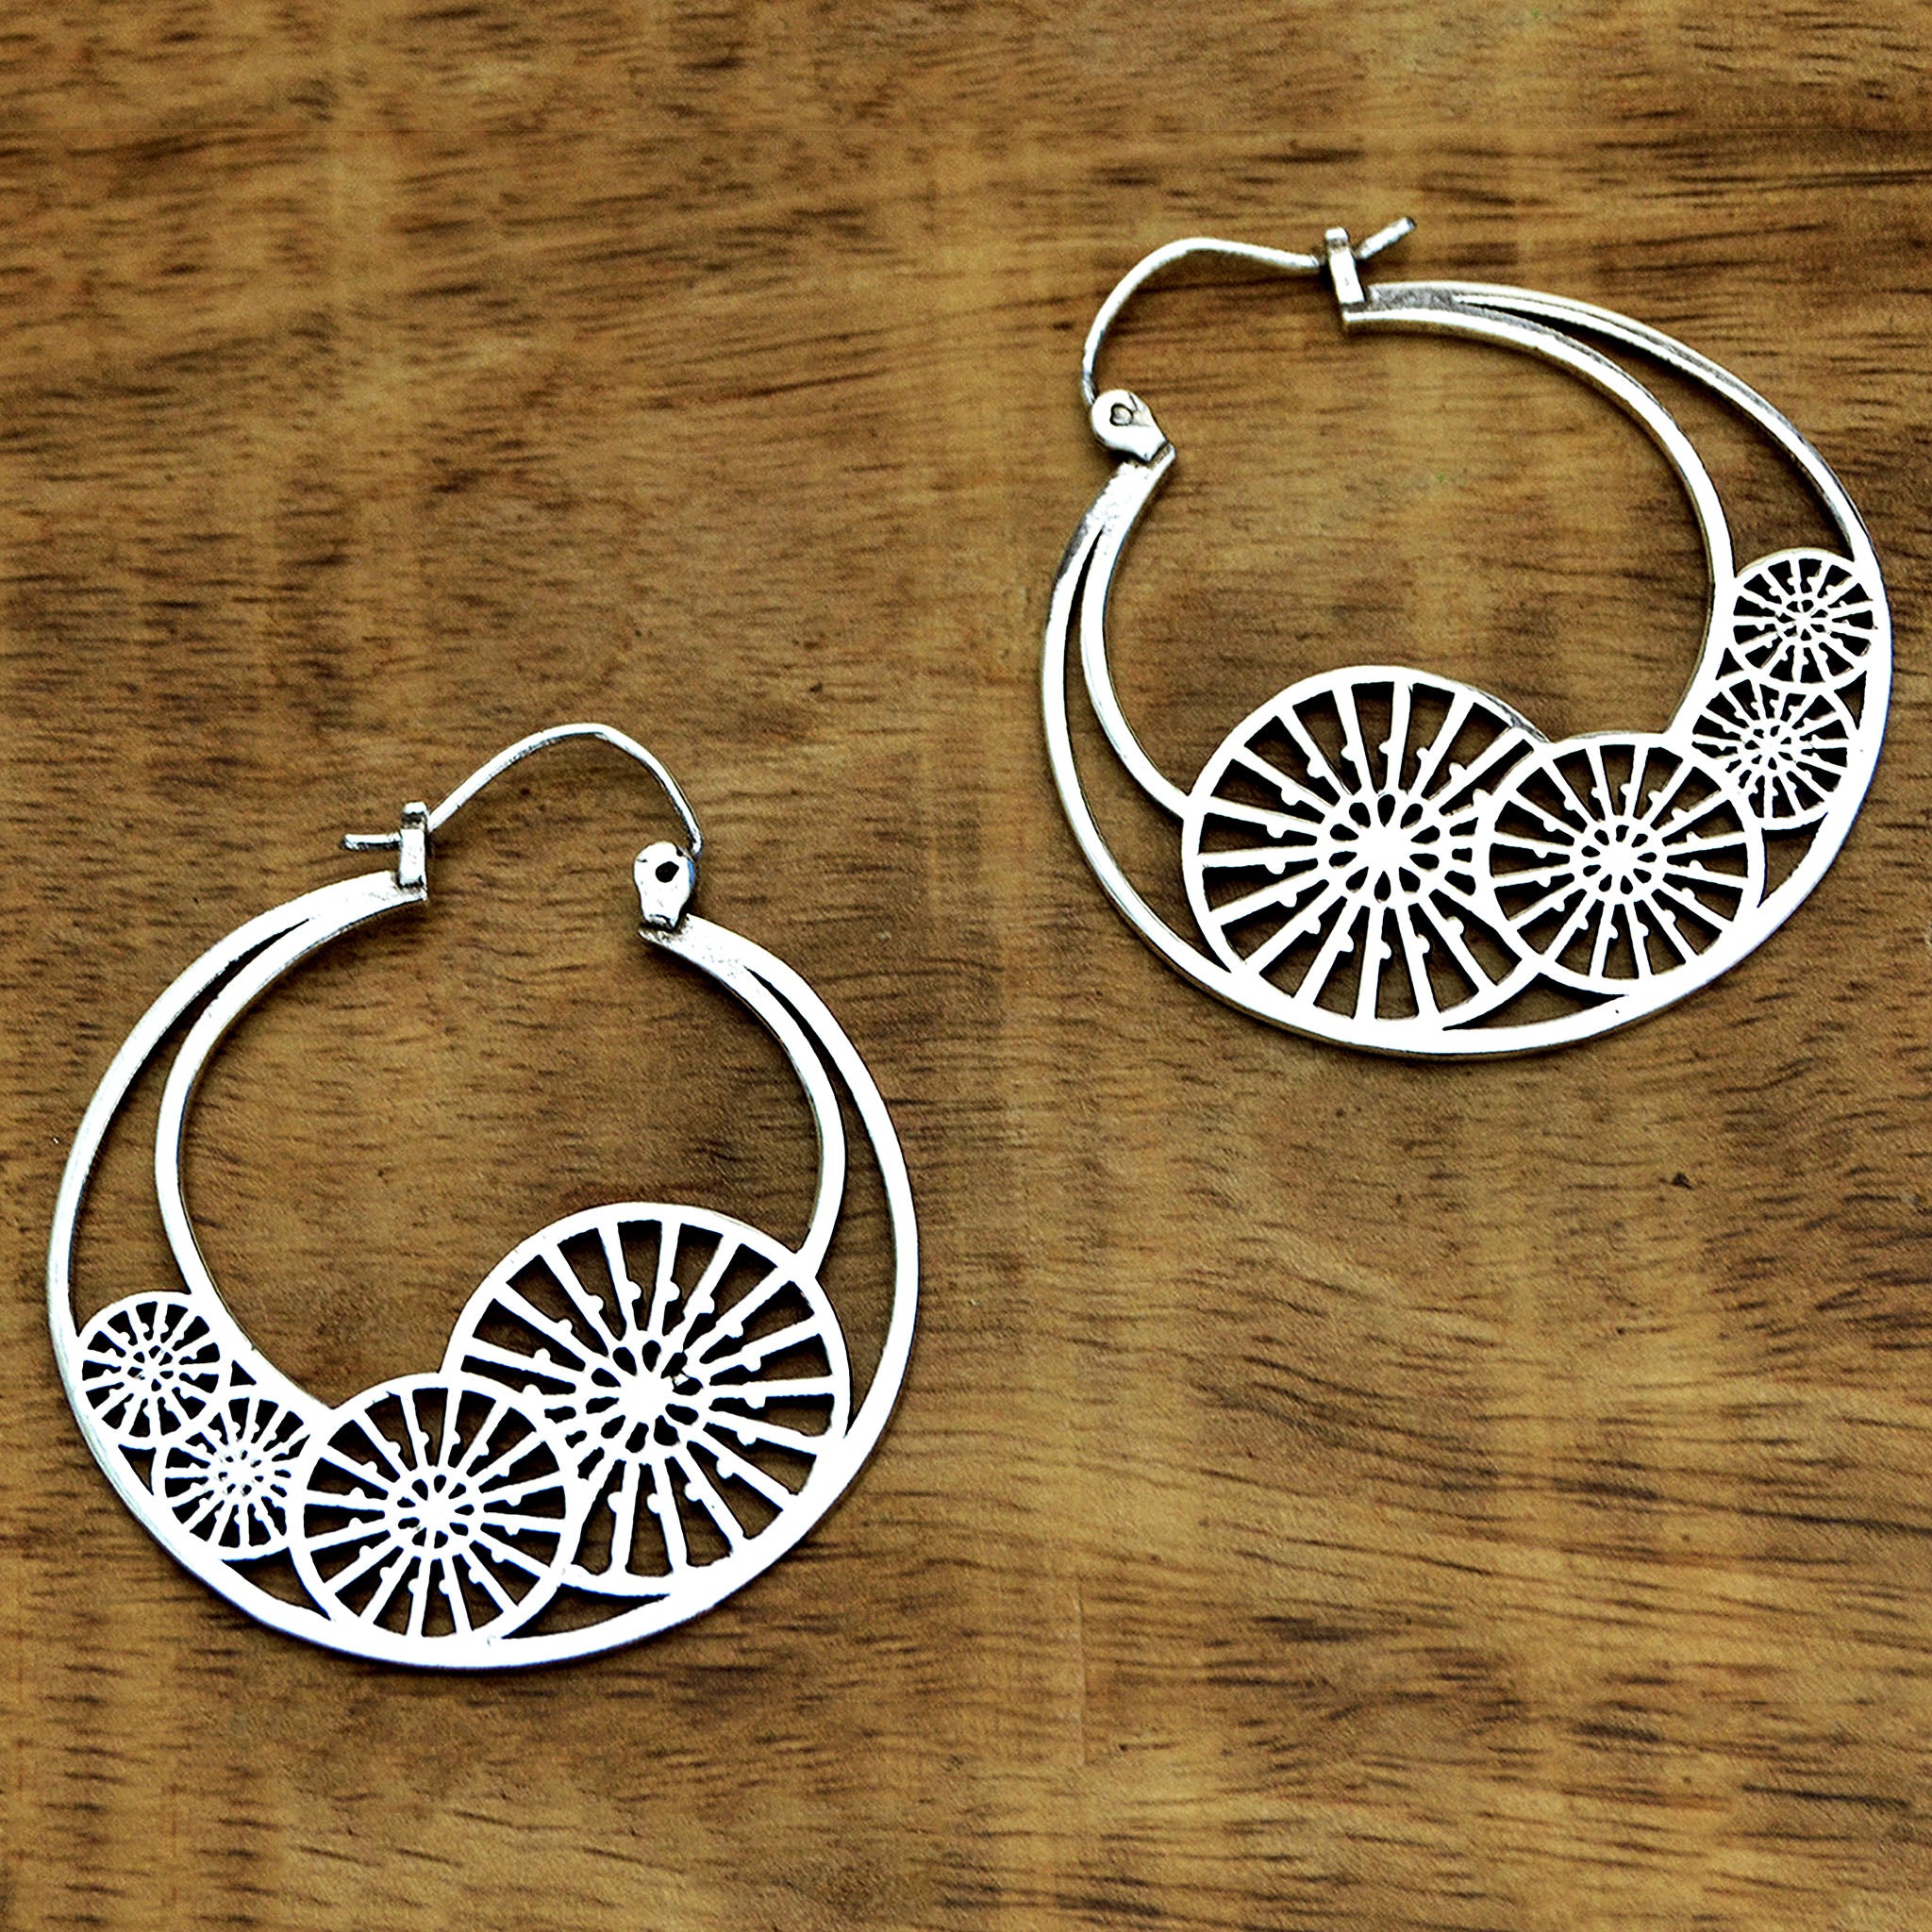 Festival hoop earrings